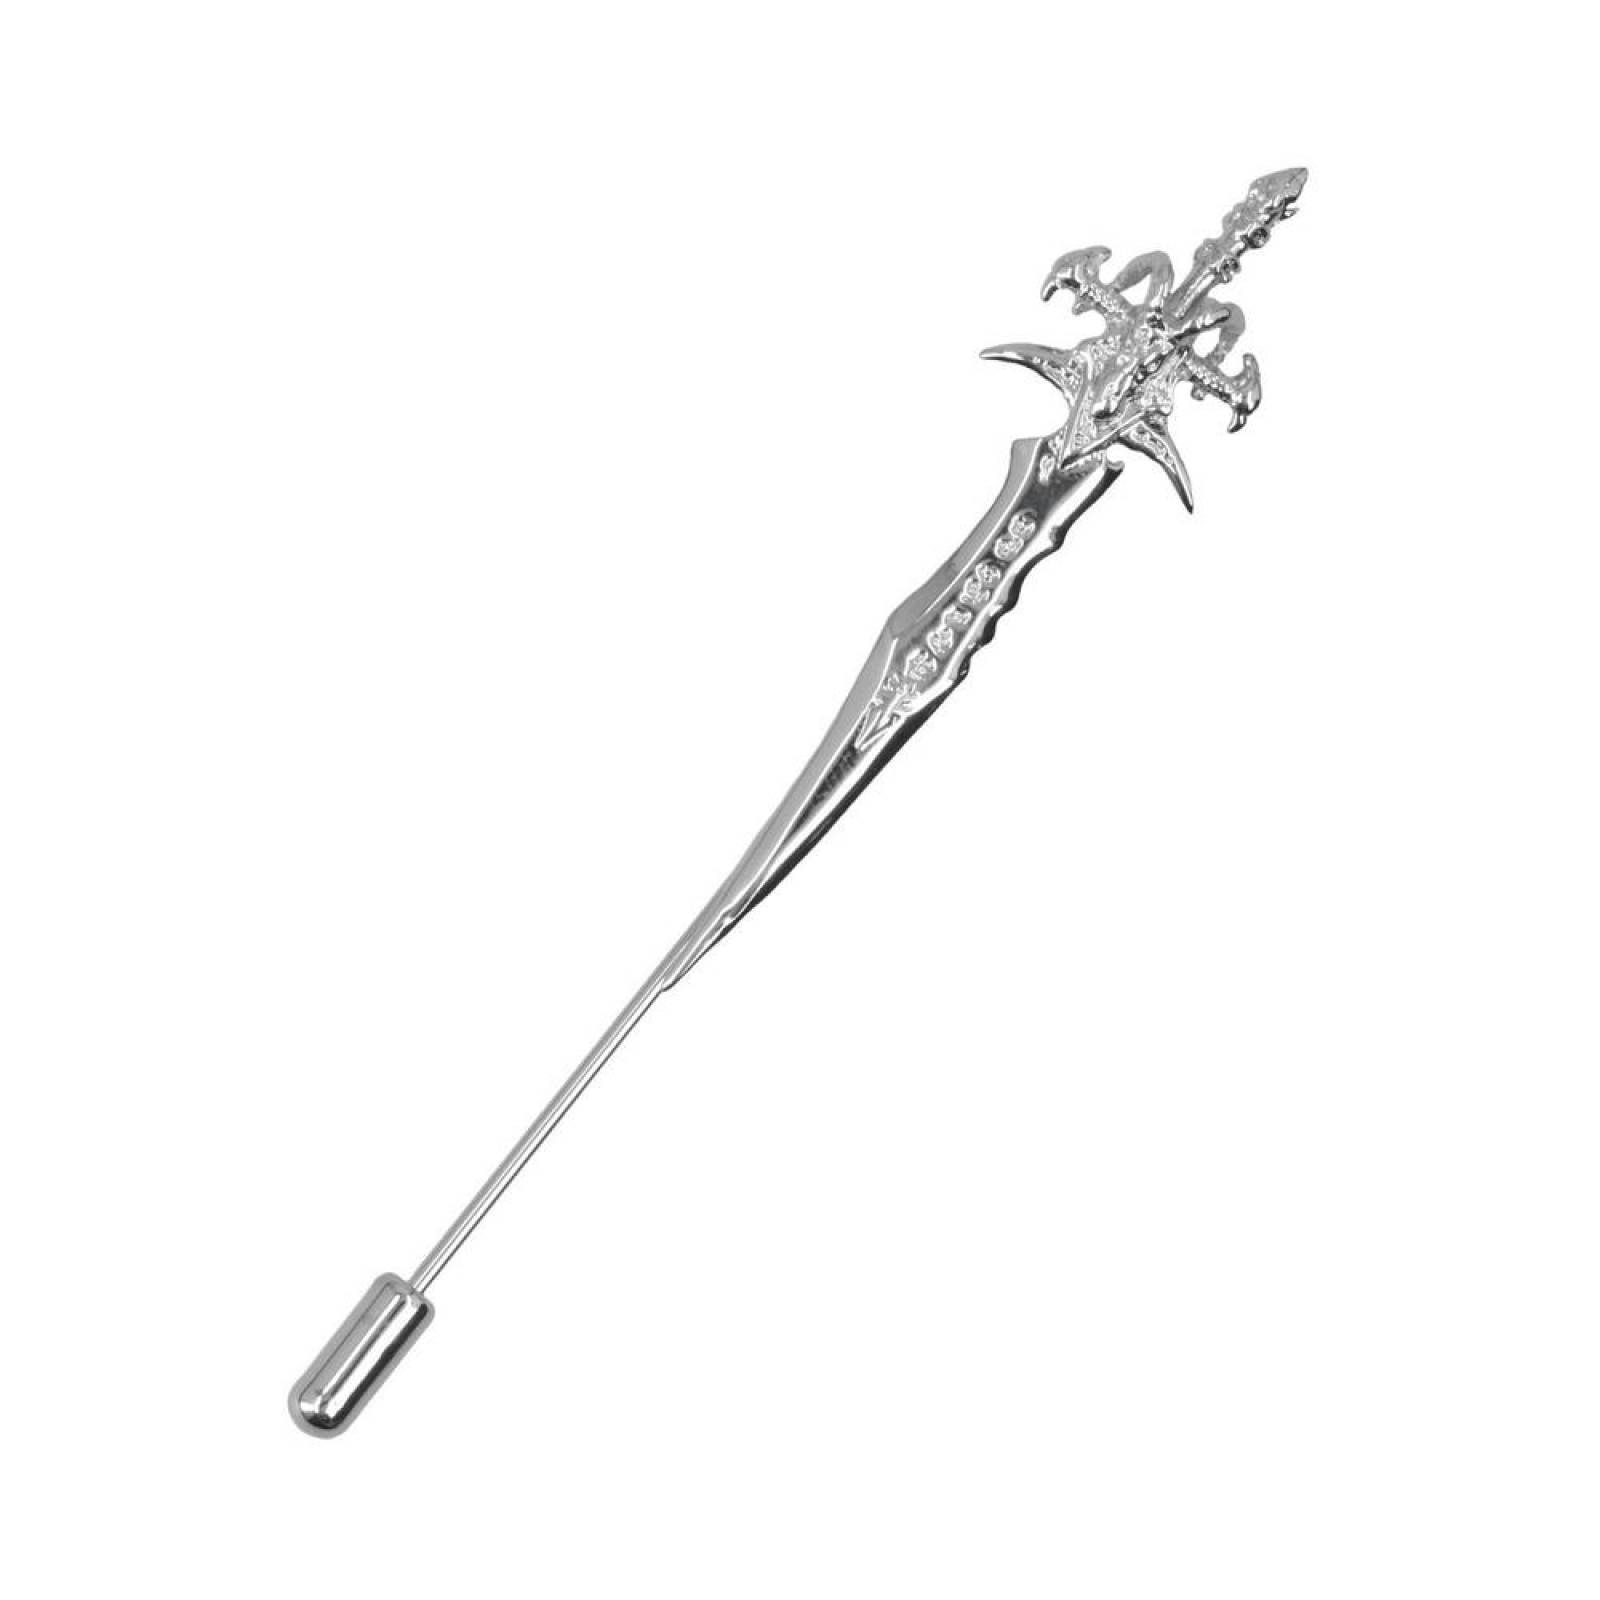 Pin Royal Flush metálico diseño espada acero 